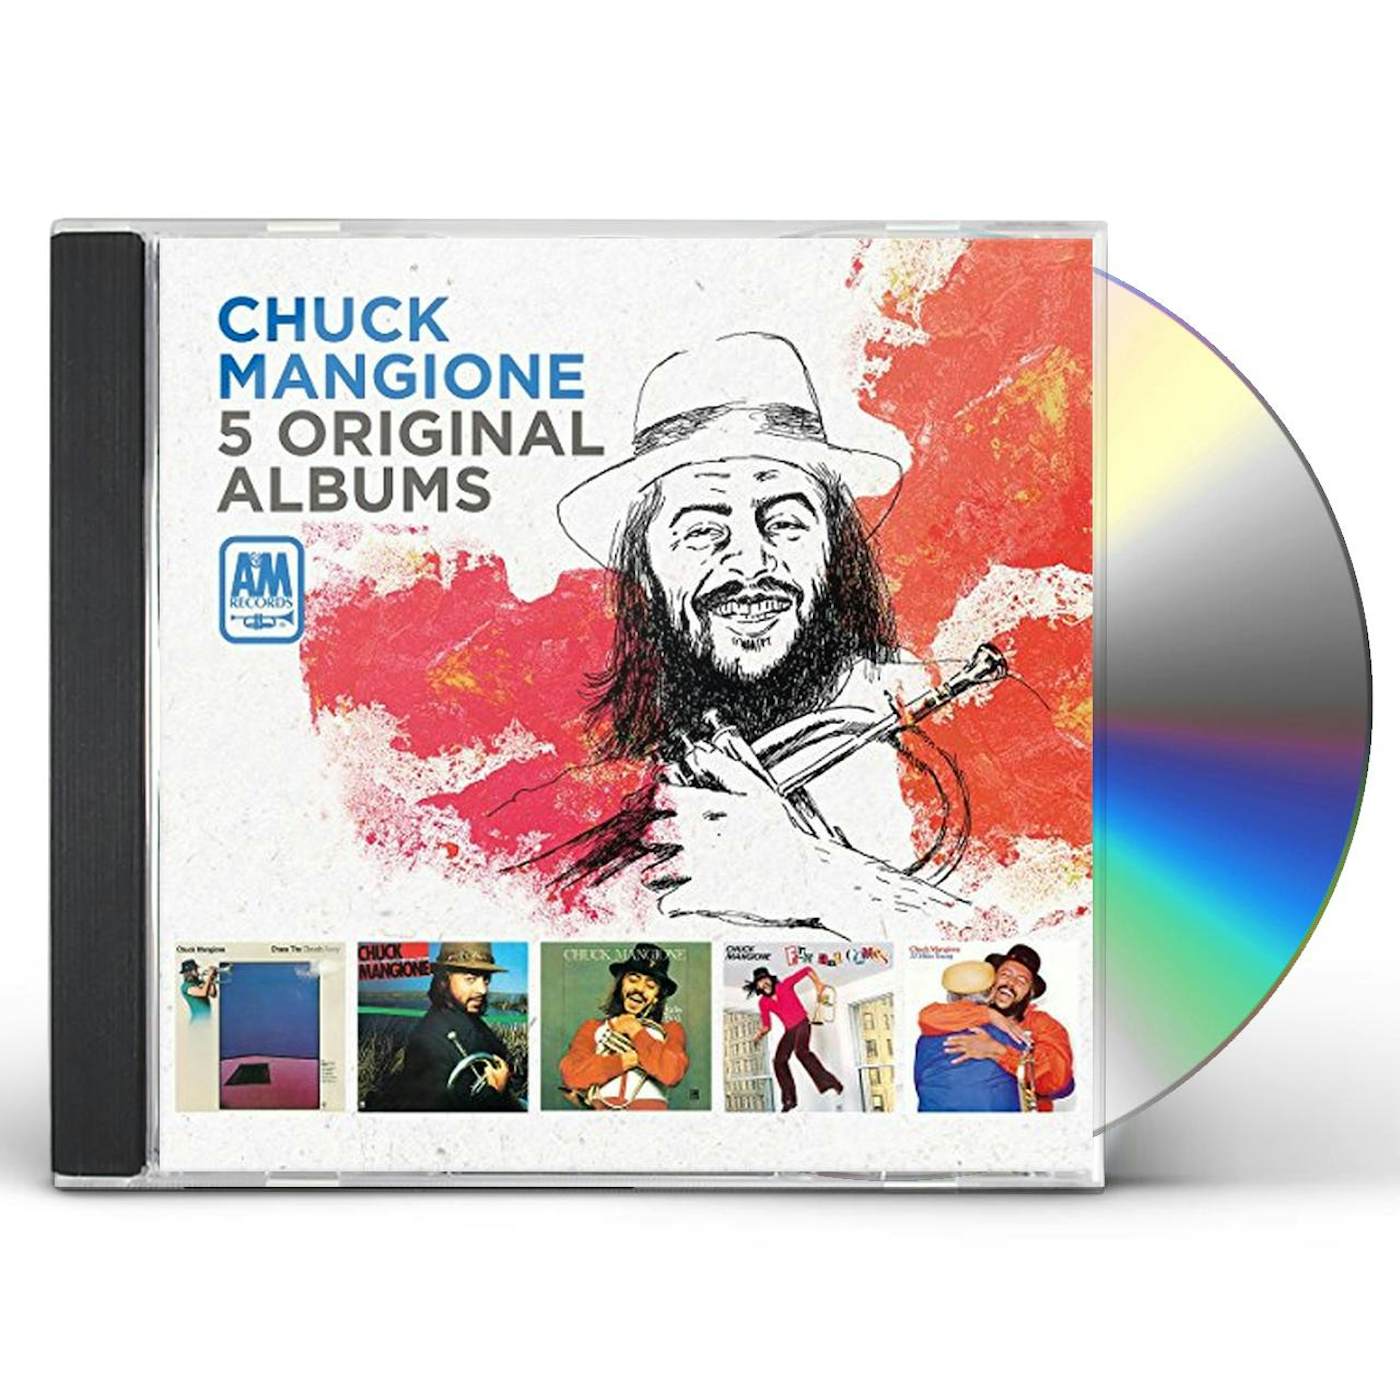 Chuck Mangione 5 ORIGINAL ALBUMS CD